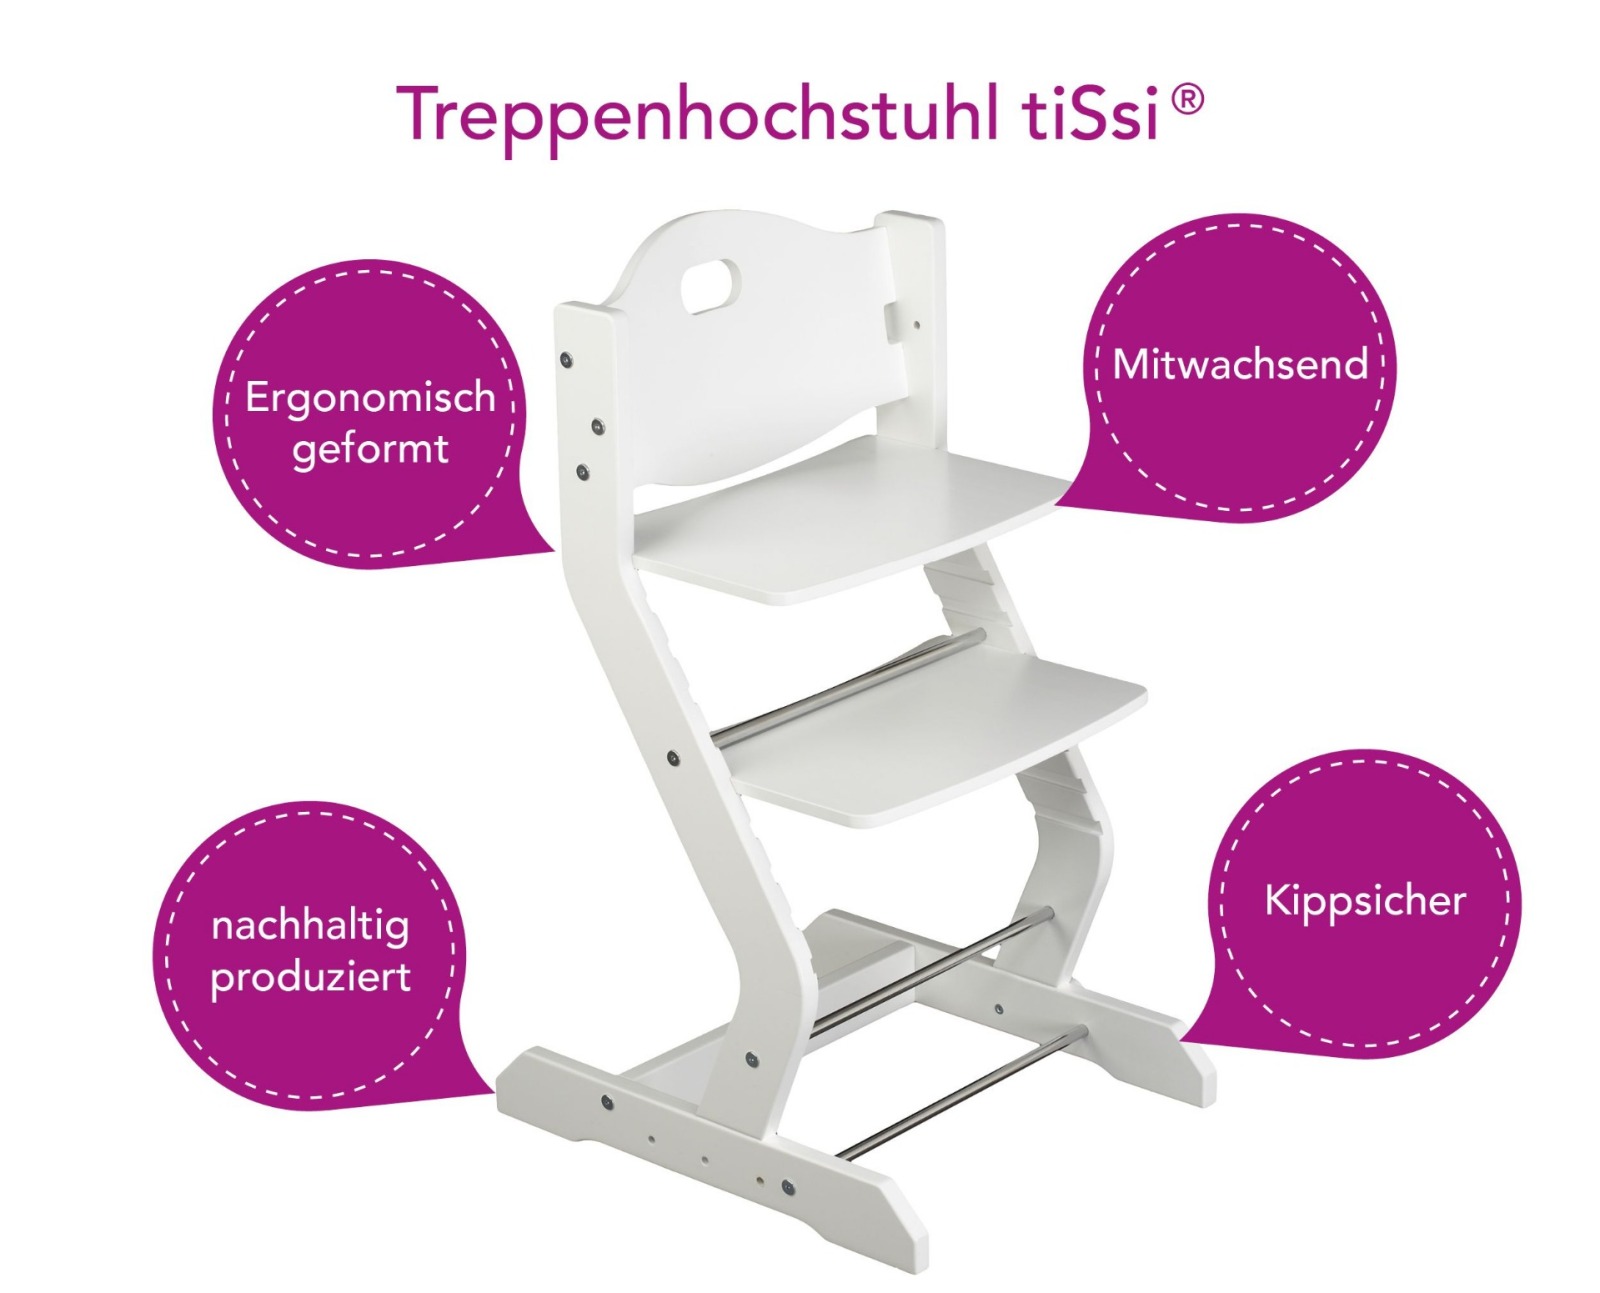 tiSsi Treppenhochstuhl Weiss ohne Tisch und Sitzkissen